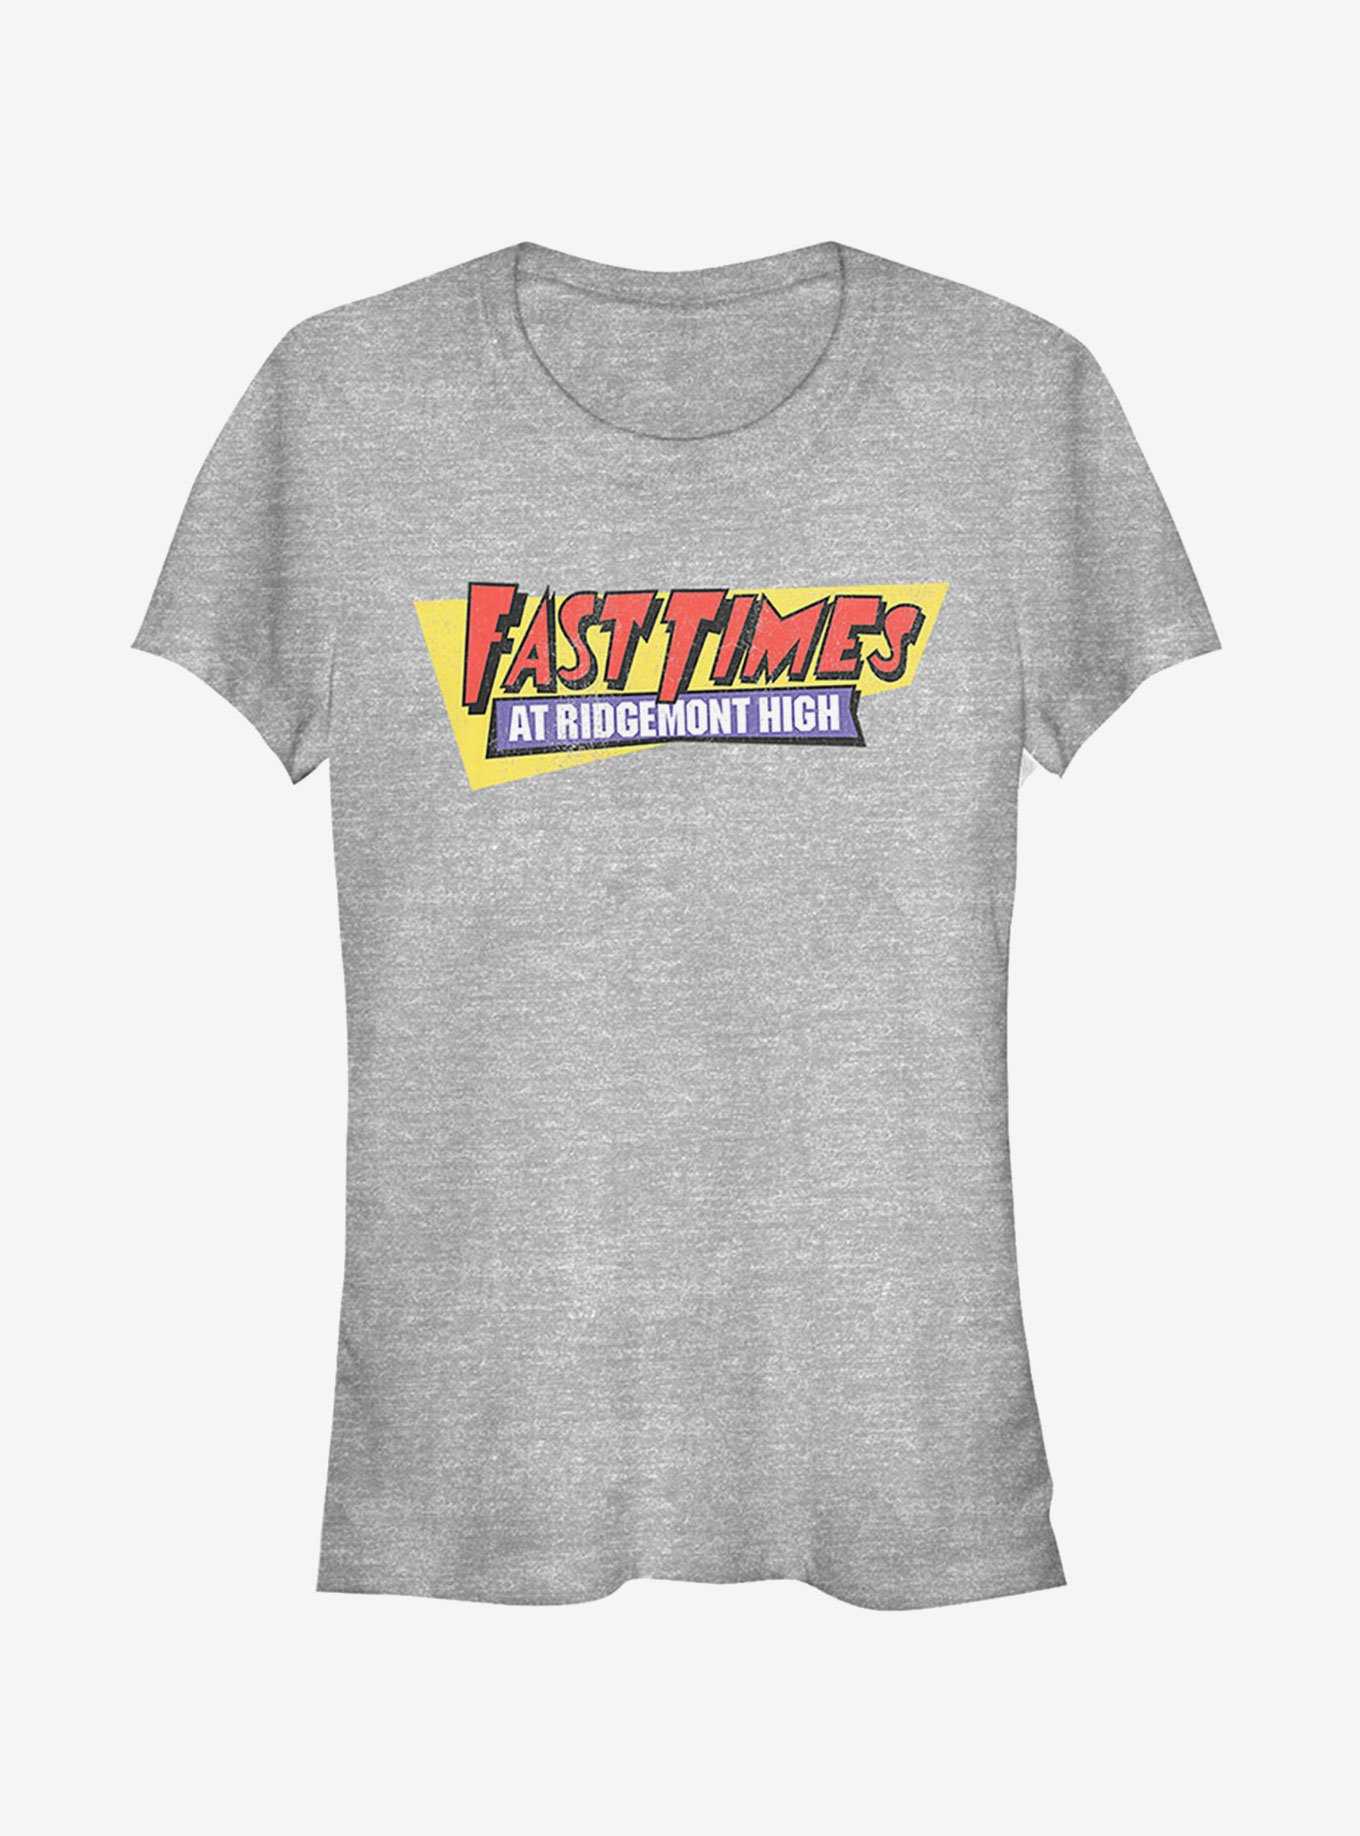 Fast Times at Ridgemont High Retro Logo Girls T-Shirt, , hi-res